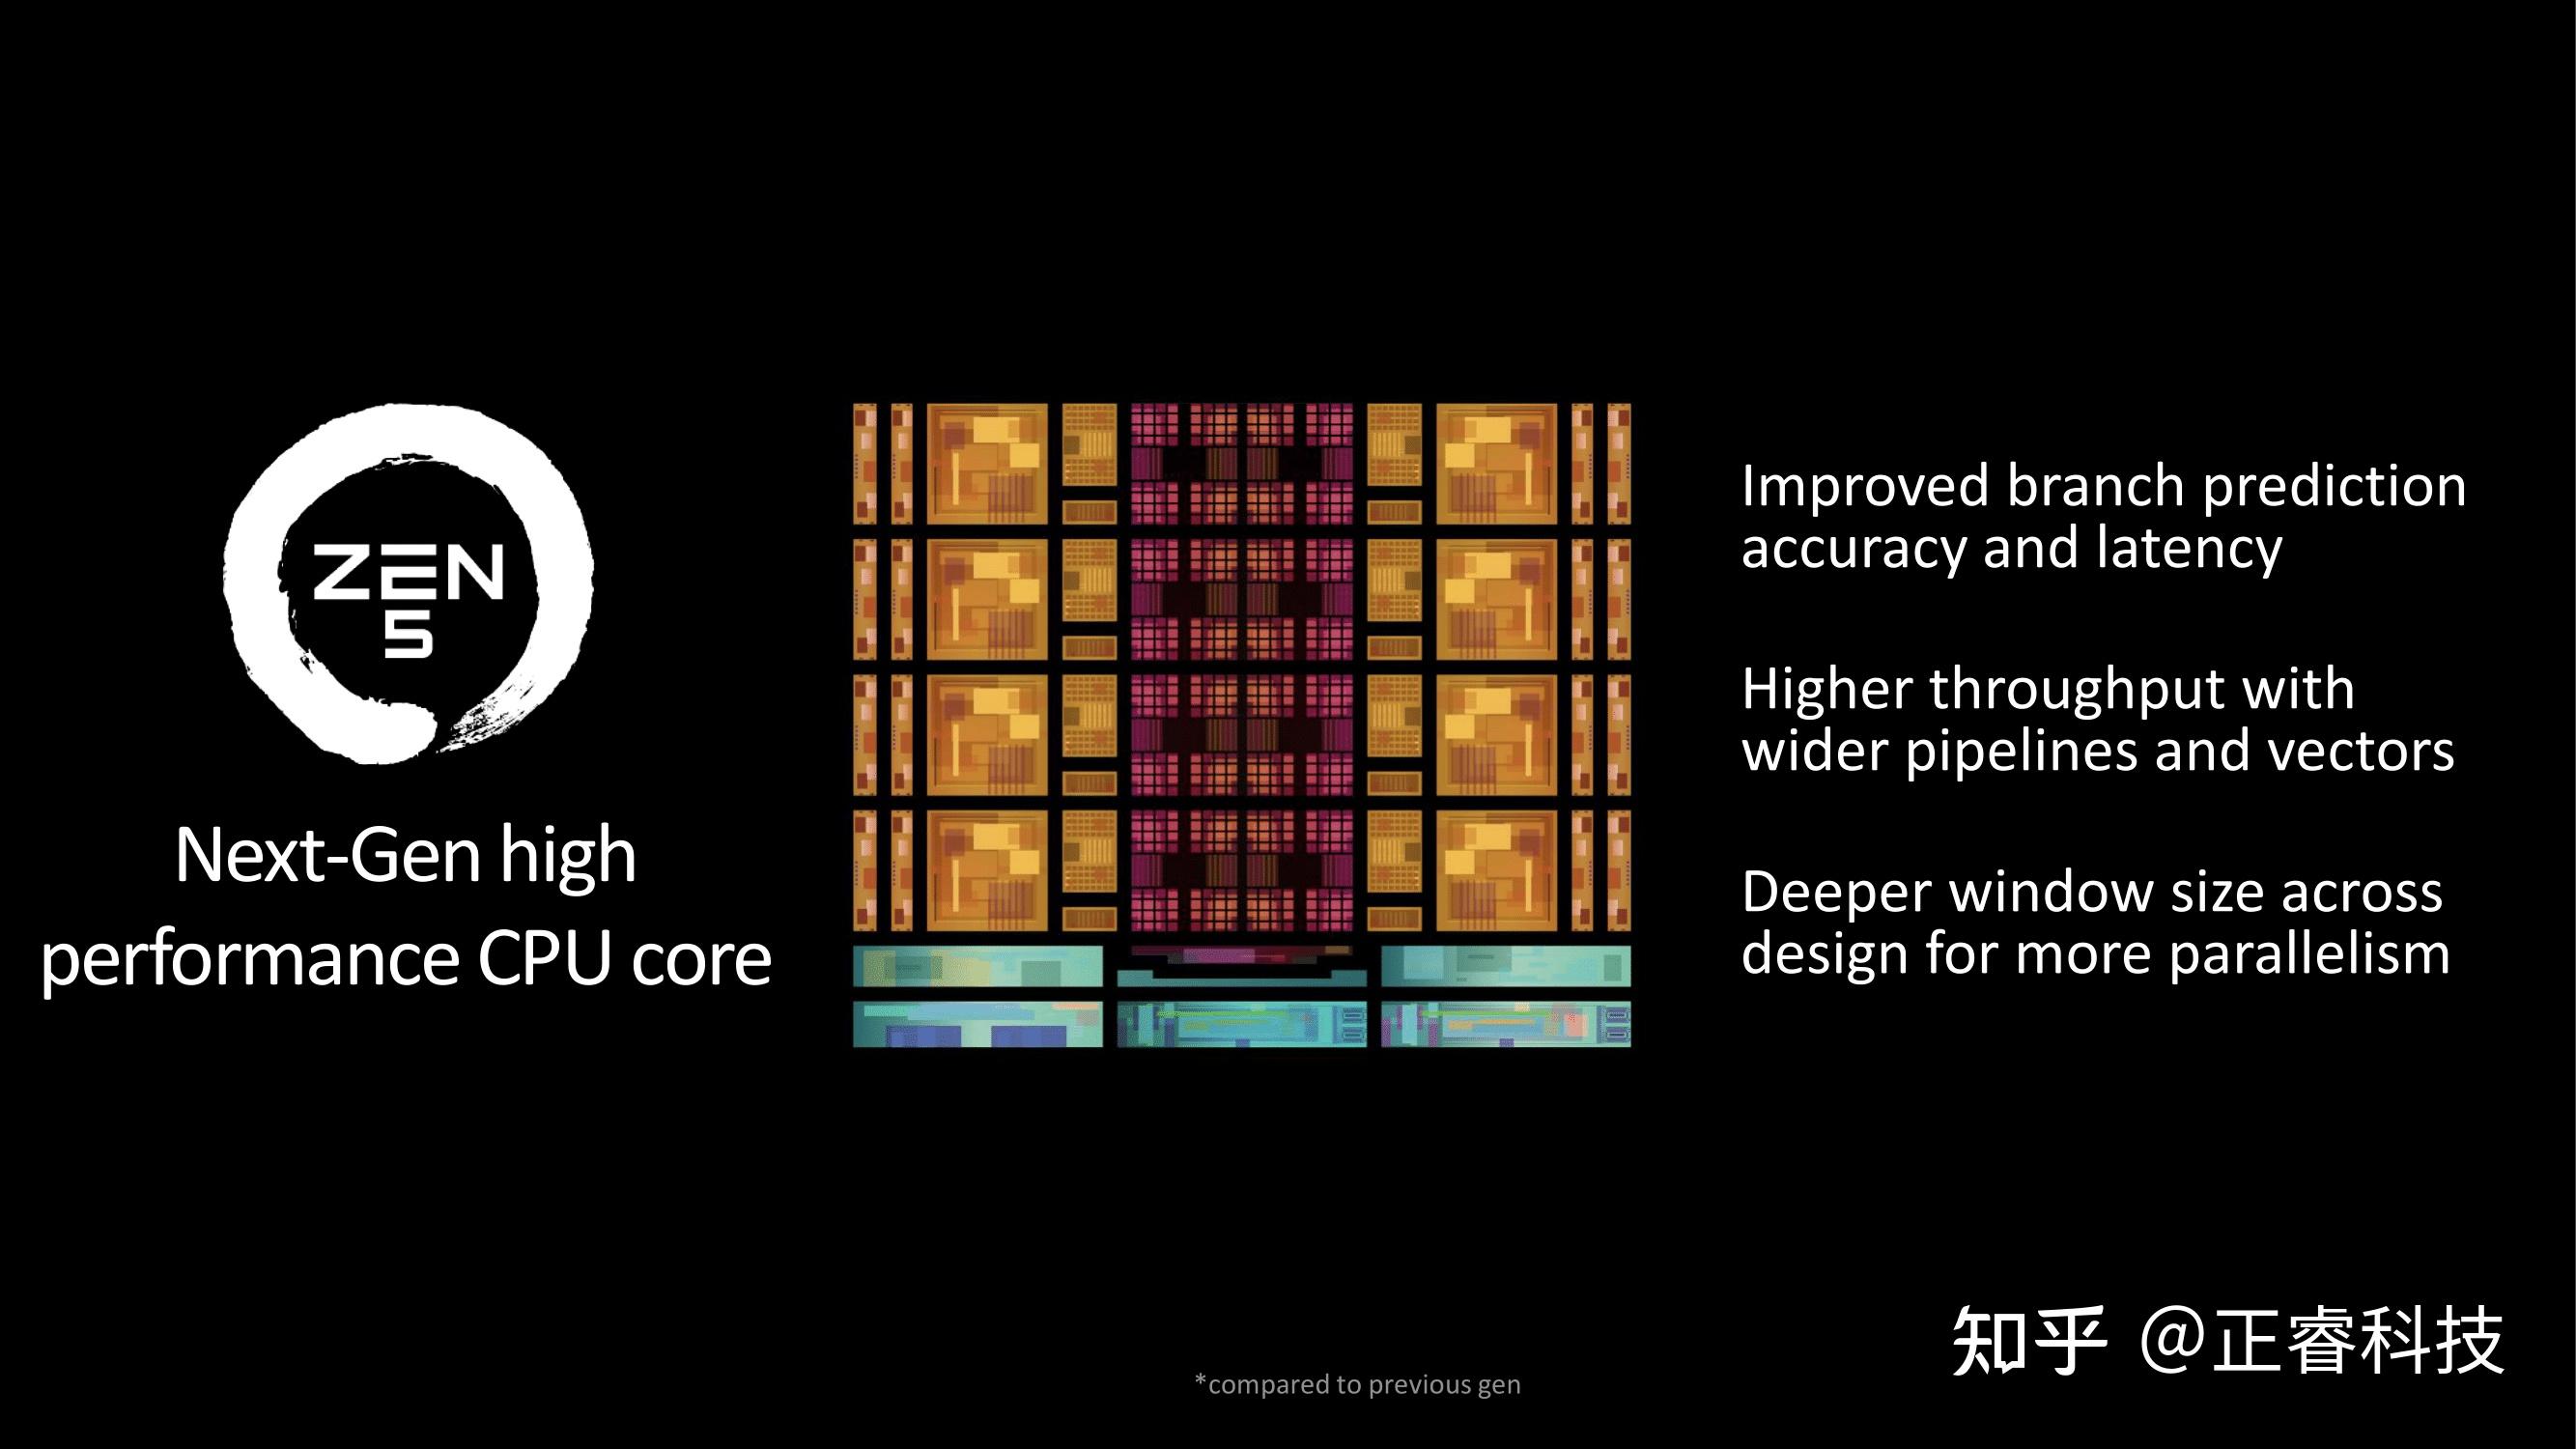 AMDRyzen75750G 芯片是否兼容 DDR4 内存？详细解析  第4张